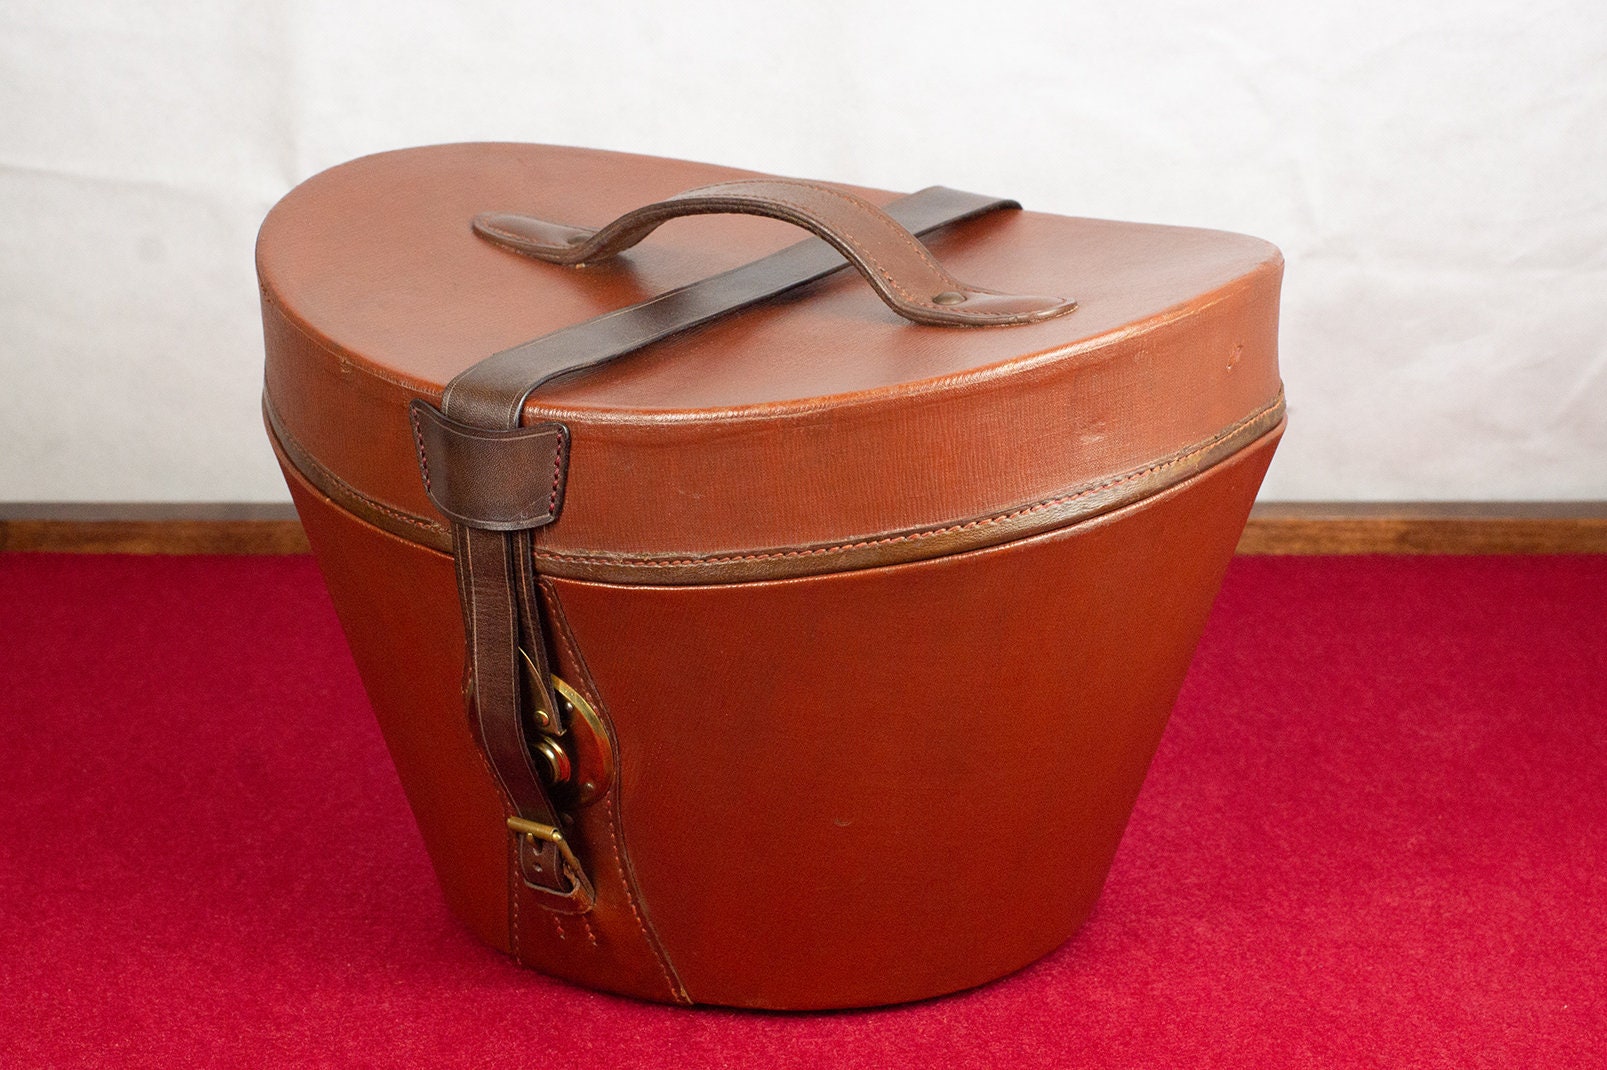 Antique Hat Boxes, Vintage retro/deco 40s-50s hat box luggage/suitcase  Fordite floral